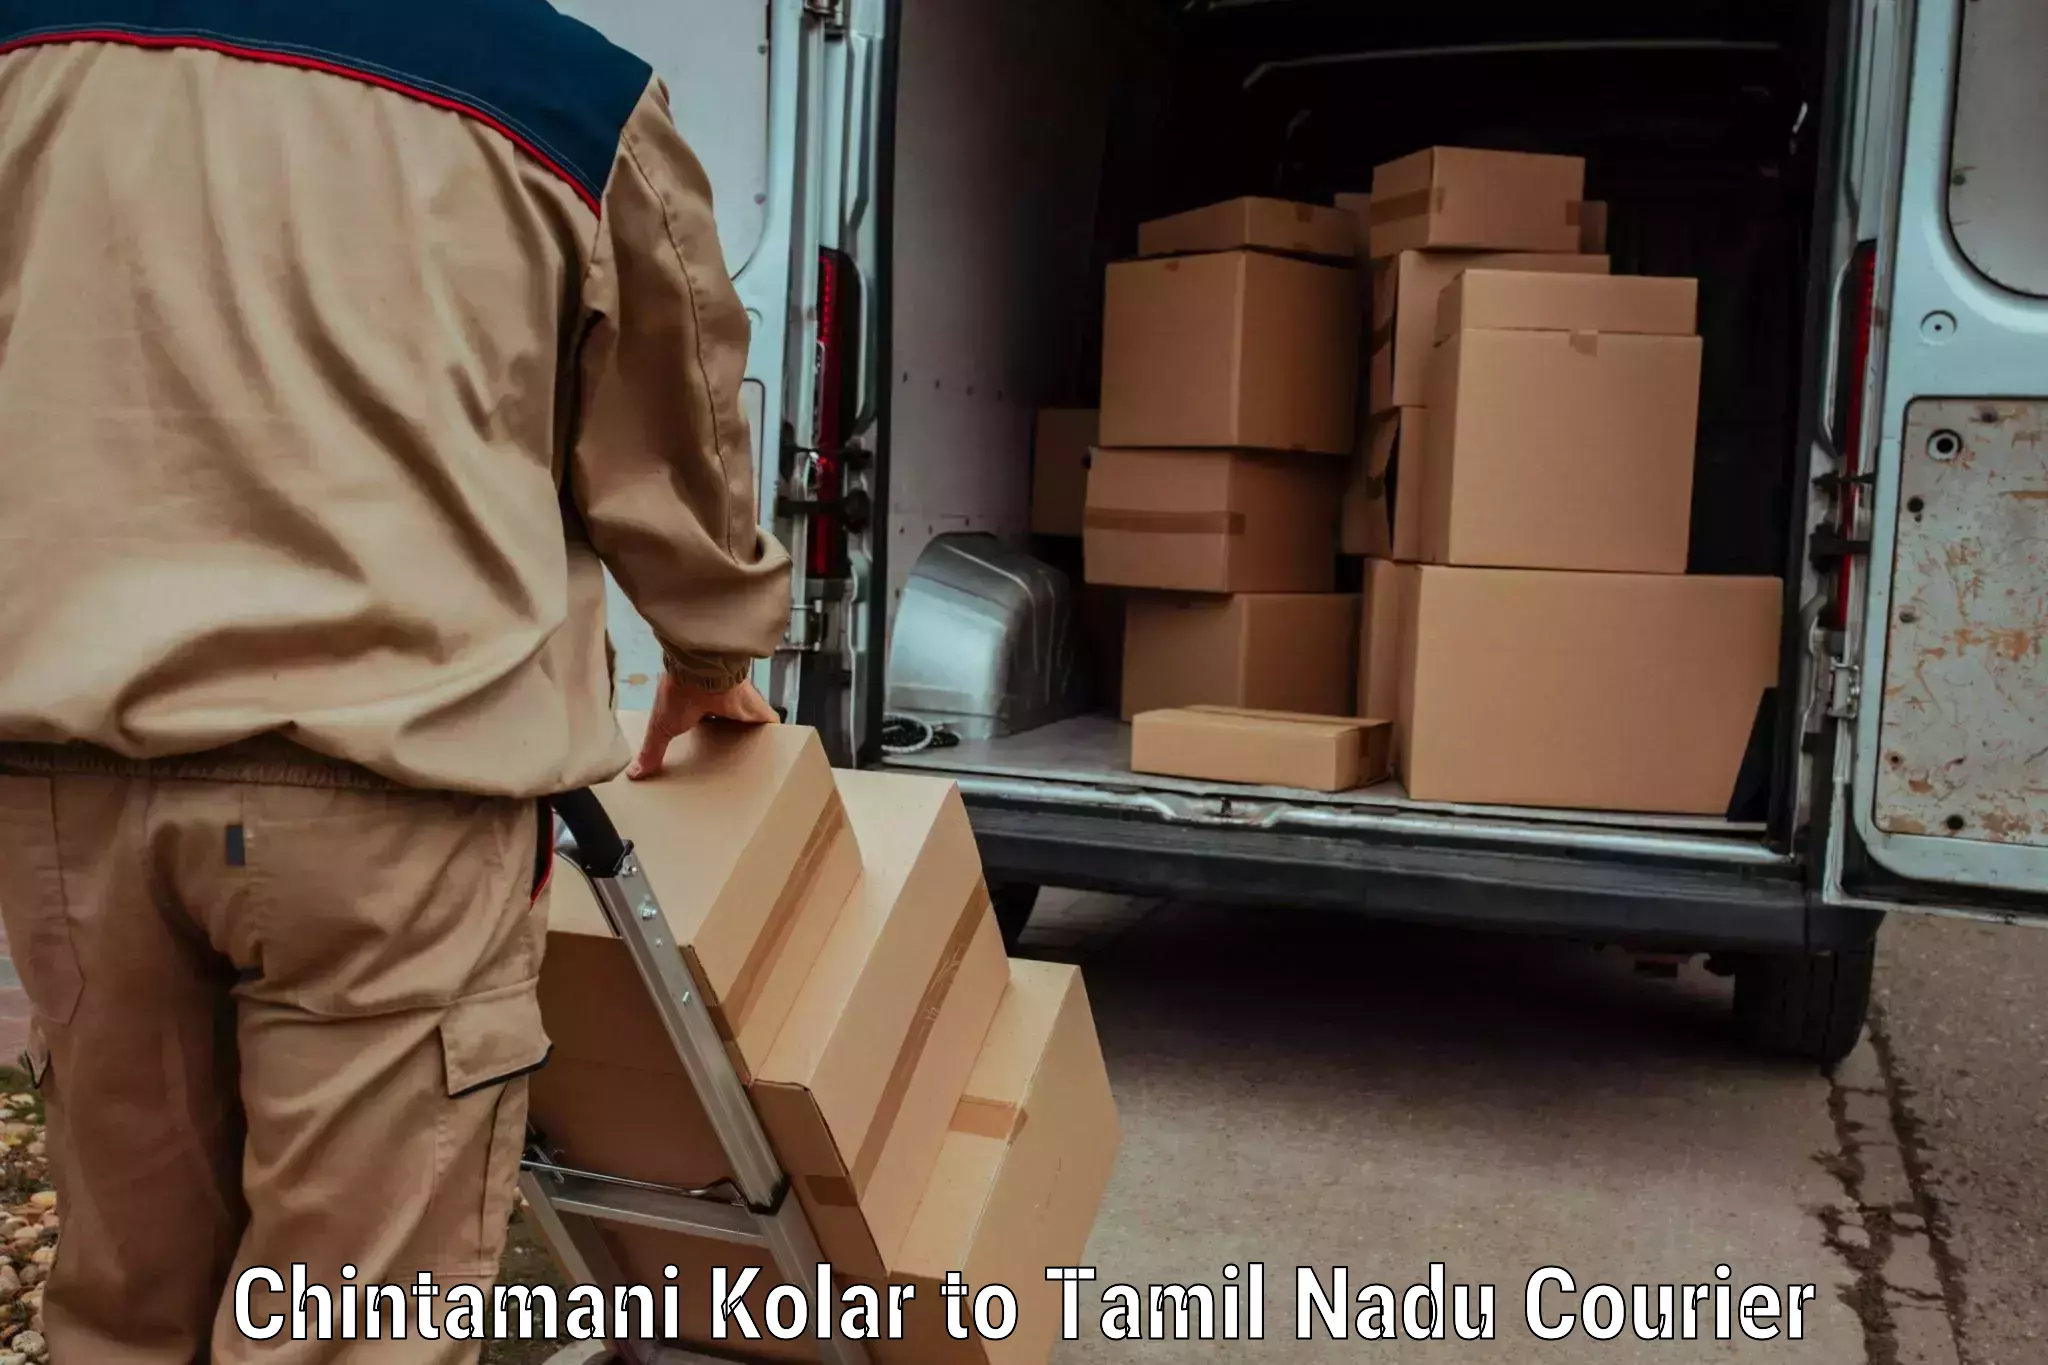 Comprehensive parcel tracking in Chintamani Kolar to Perunali